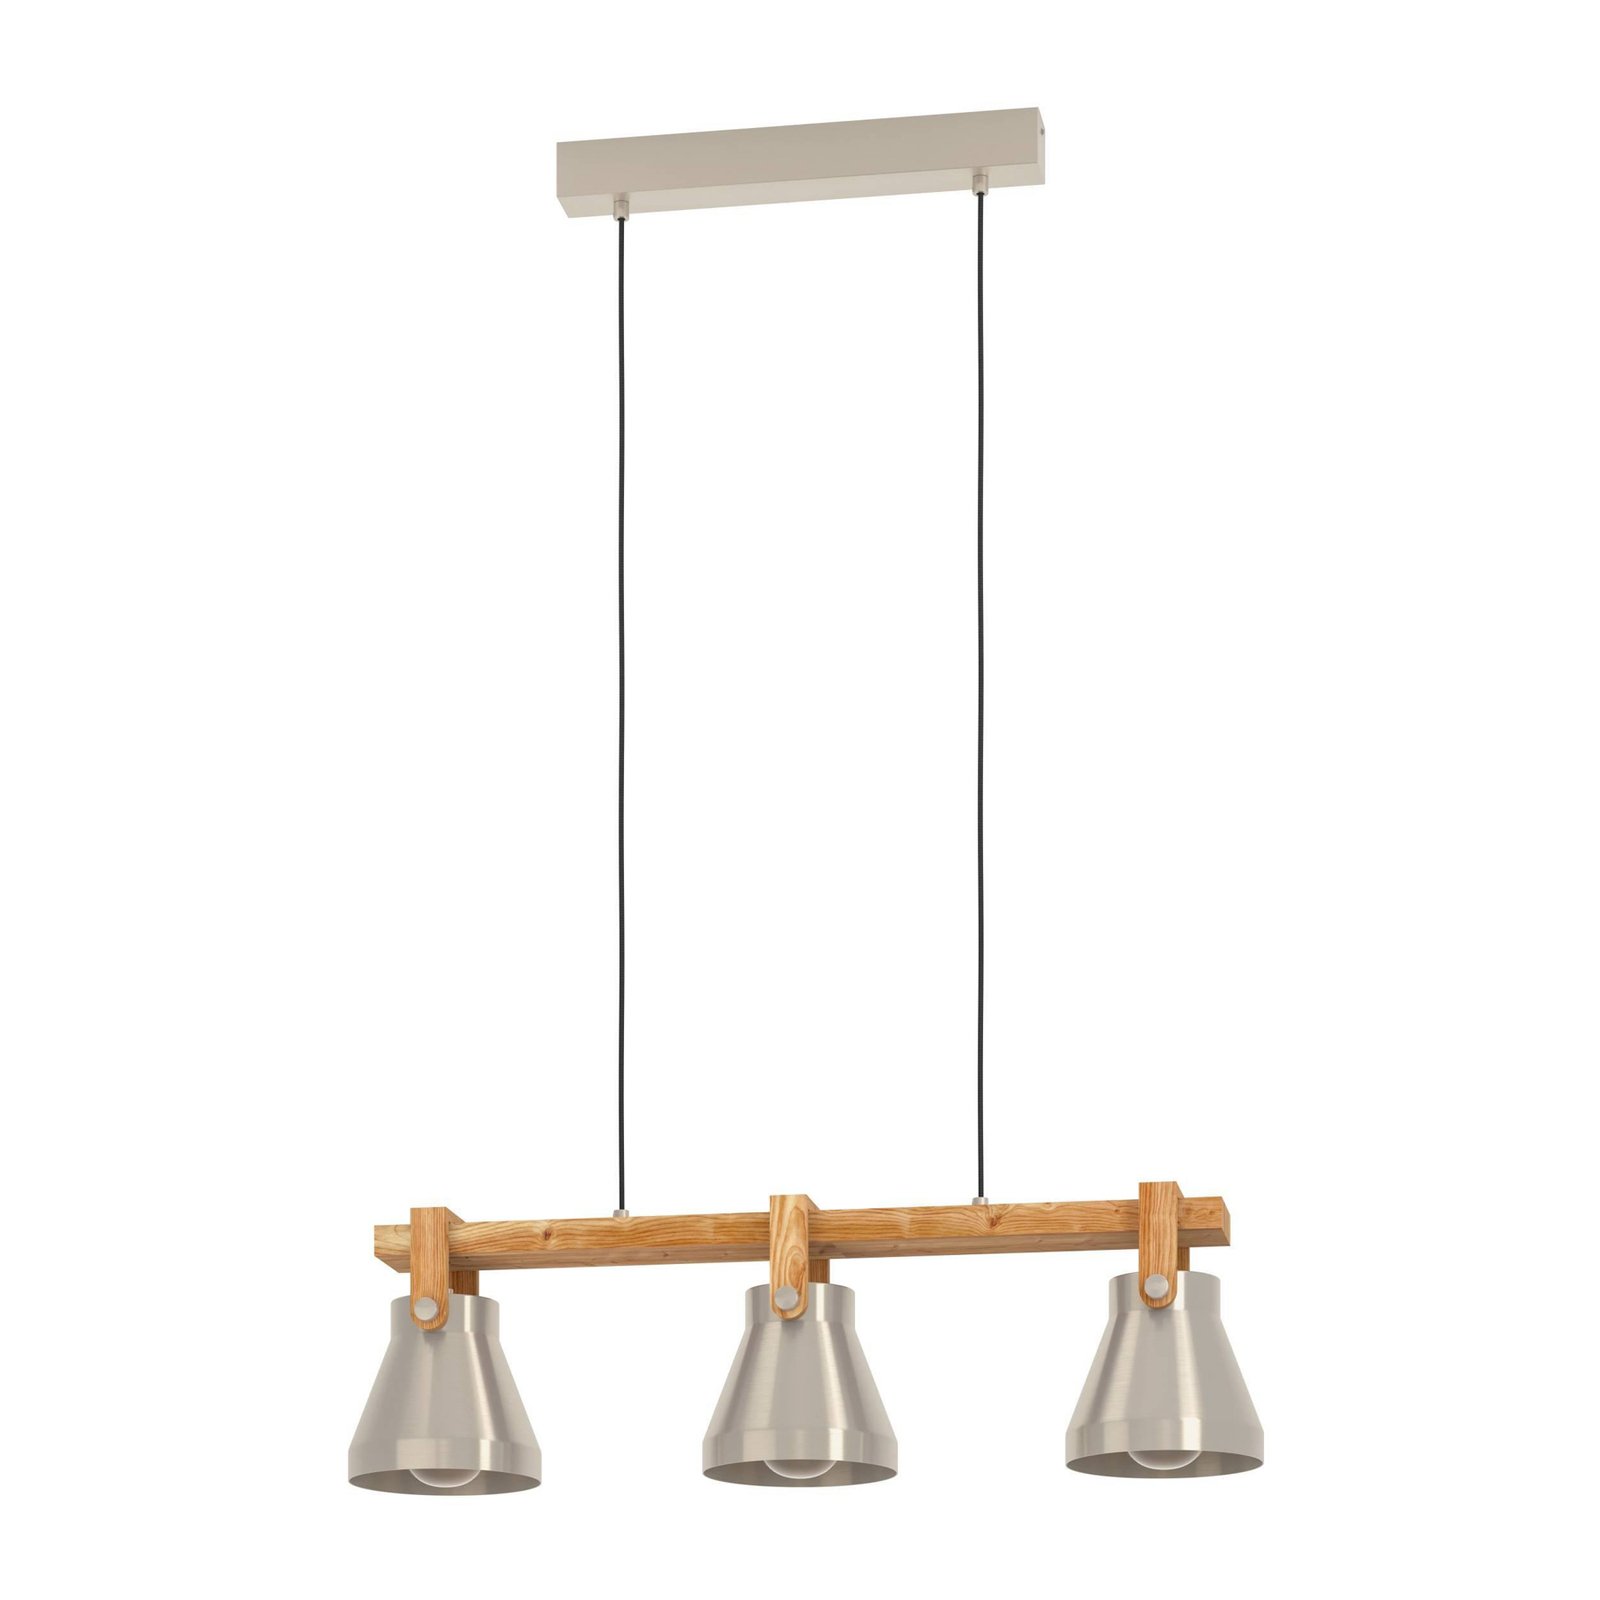 Cawton hänglampa, längd 76 cm, stål/brun, 3 lampor, stål